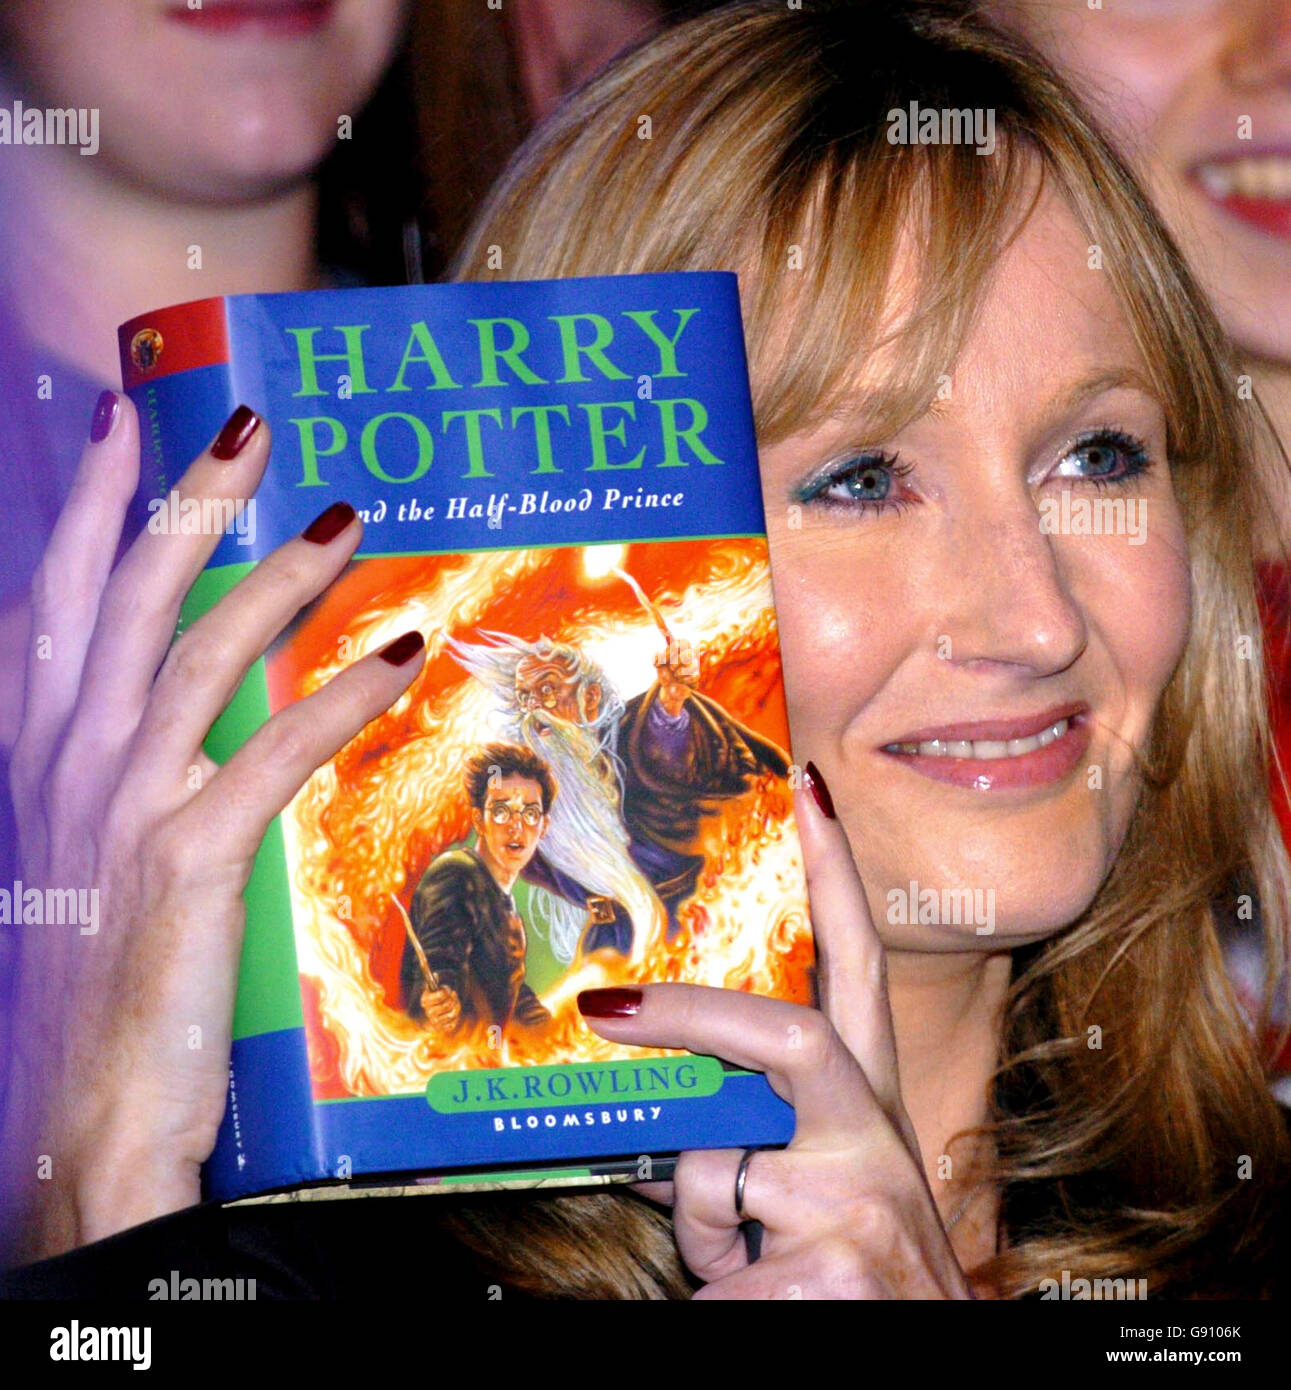 Un archivo Imagen de JK Rowling el autor de los libros de Harry Potter.datado  15 de julio de 2005. Harry Potter ha sido votado como el mayor héroe de  fantasía de todos